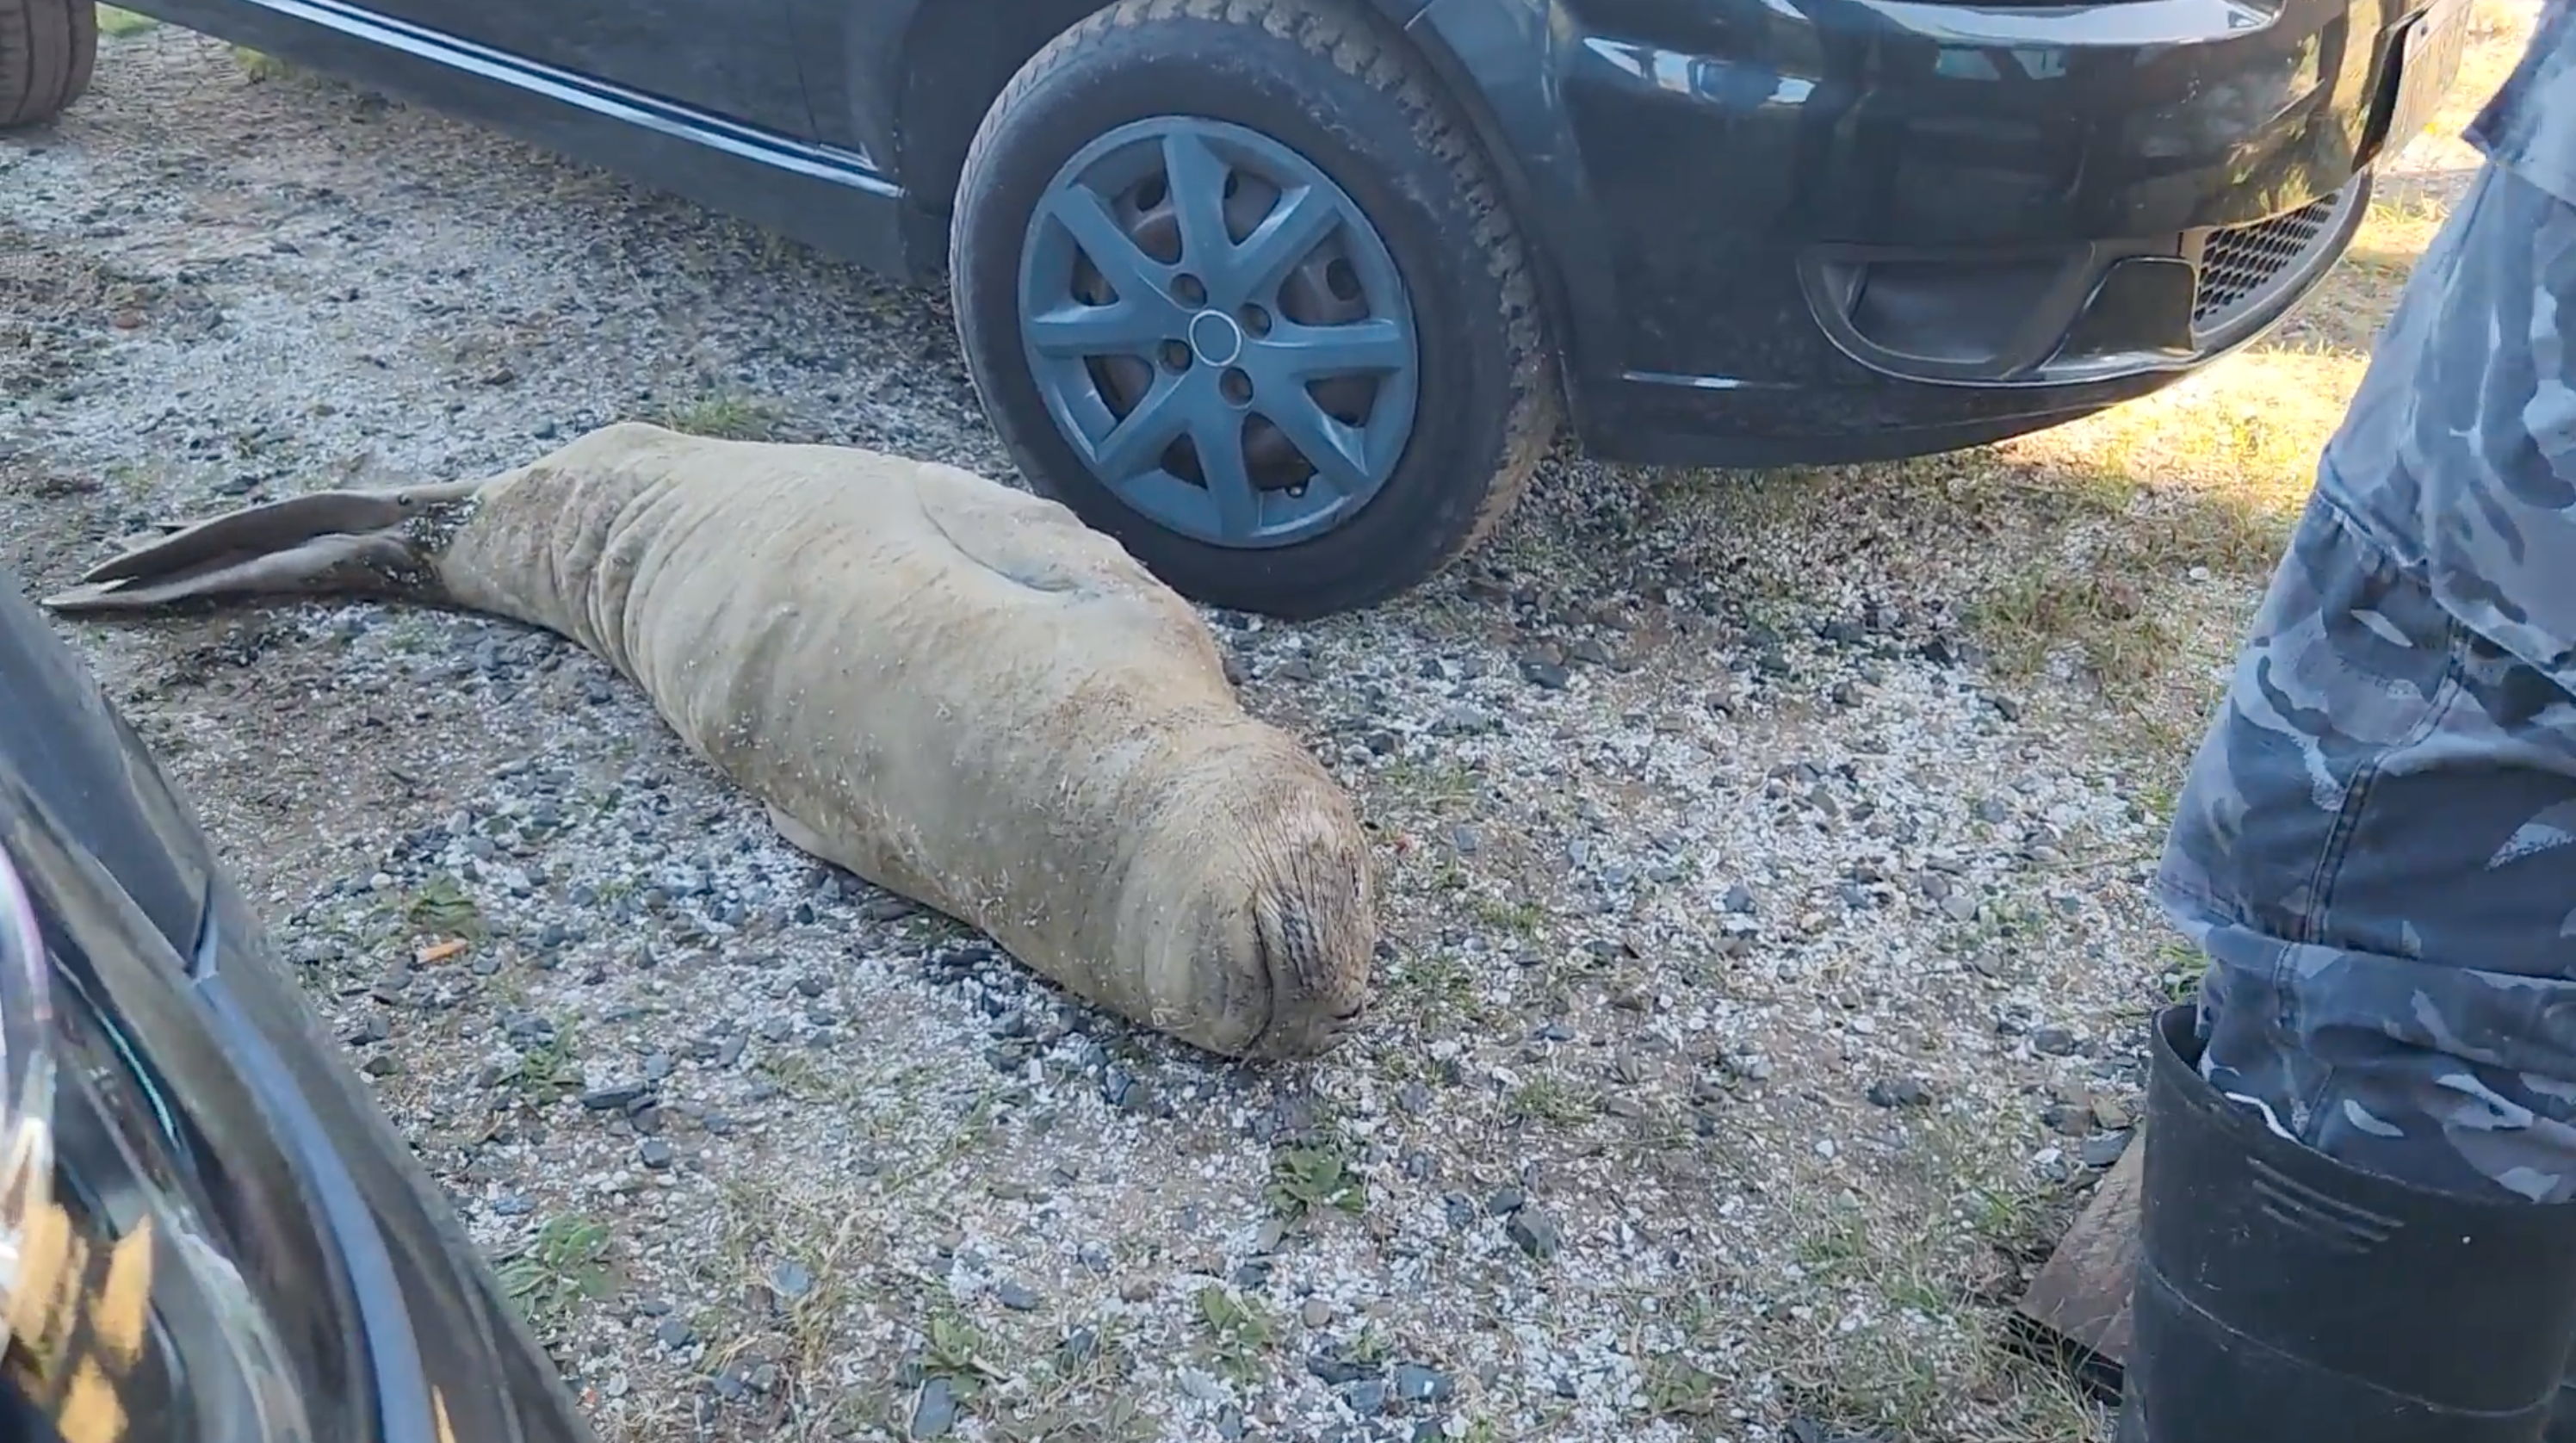 El elefante marino fue encontrado el pasado 2 de mayo en el estacionamiento de un complejo turístico de San Clemente, durmiendo entre 2 vehículos